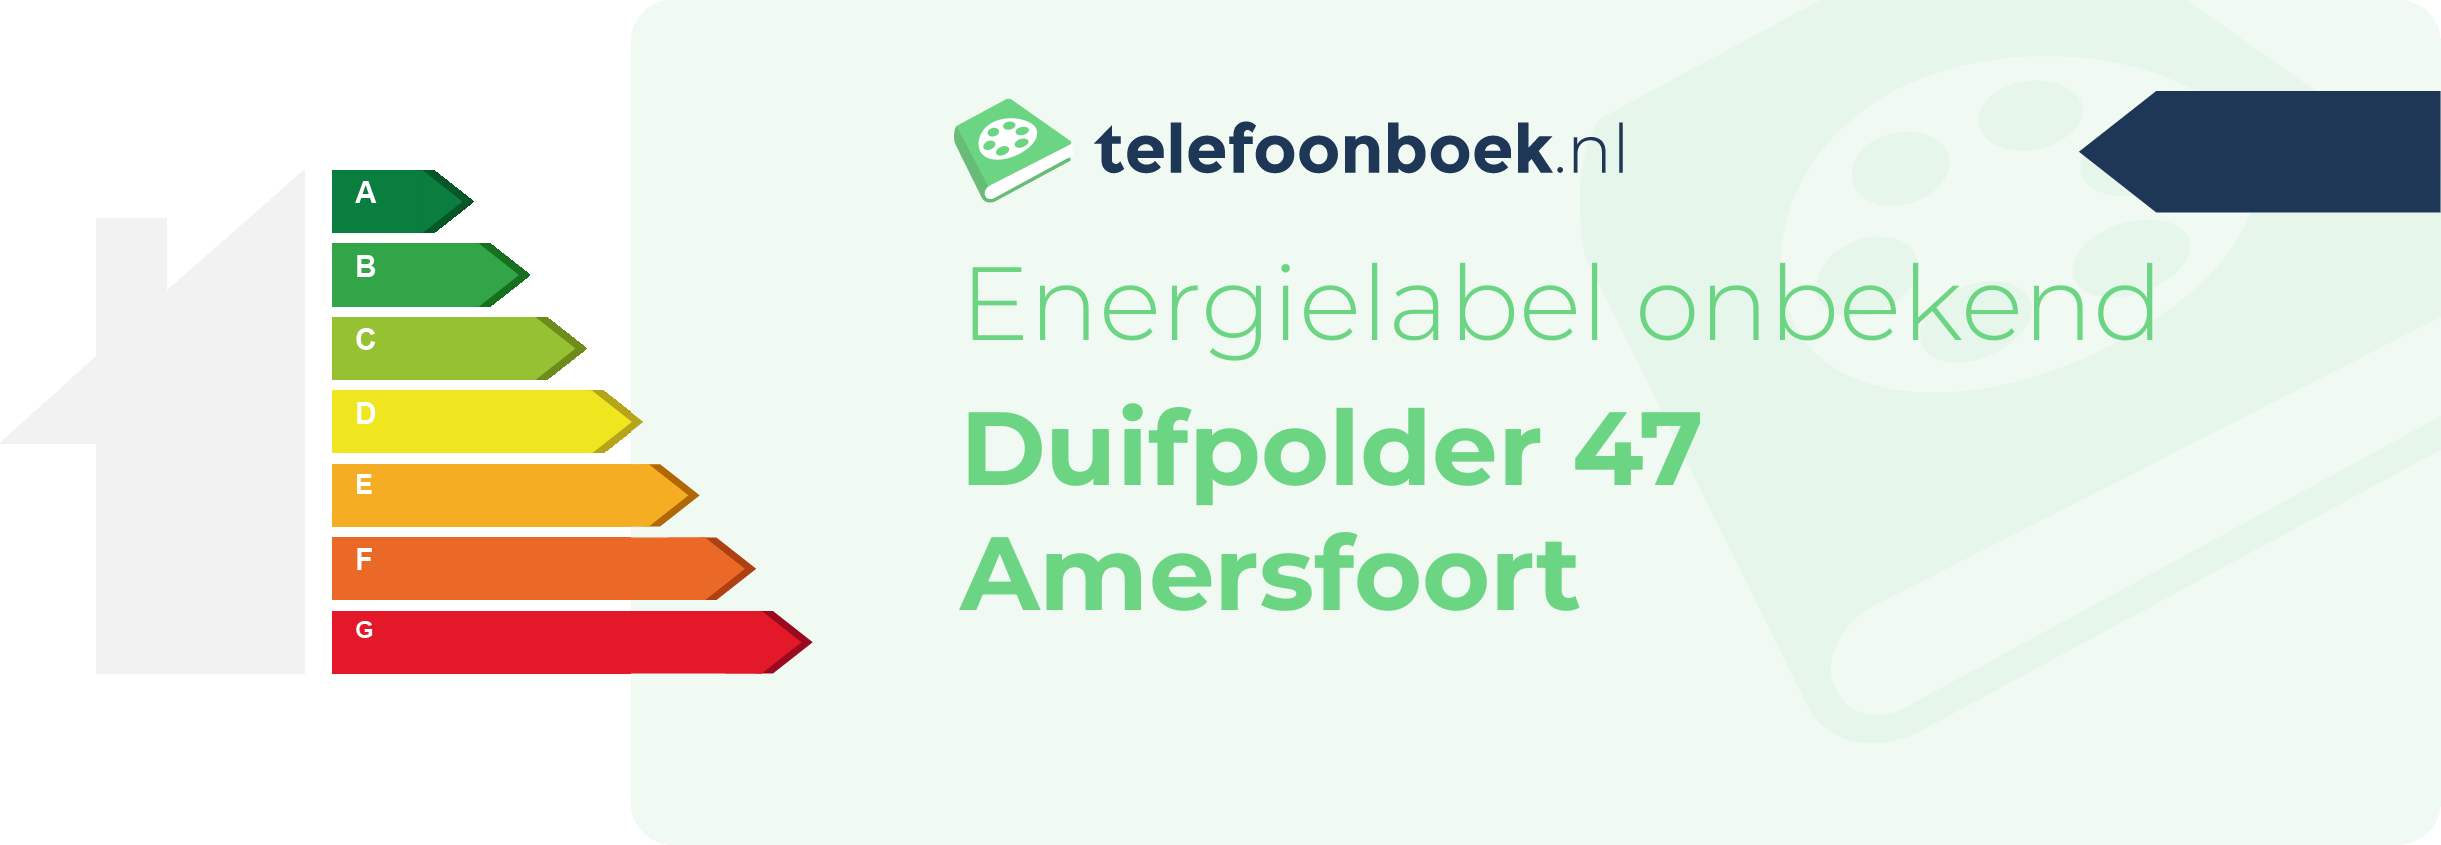 Energielabel Duifpolder 47 Amersfoort